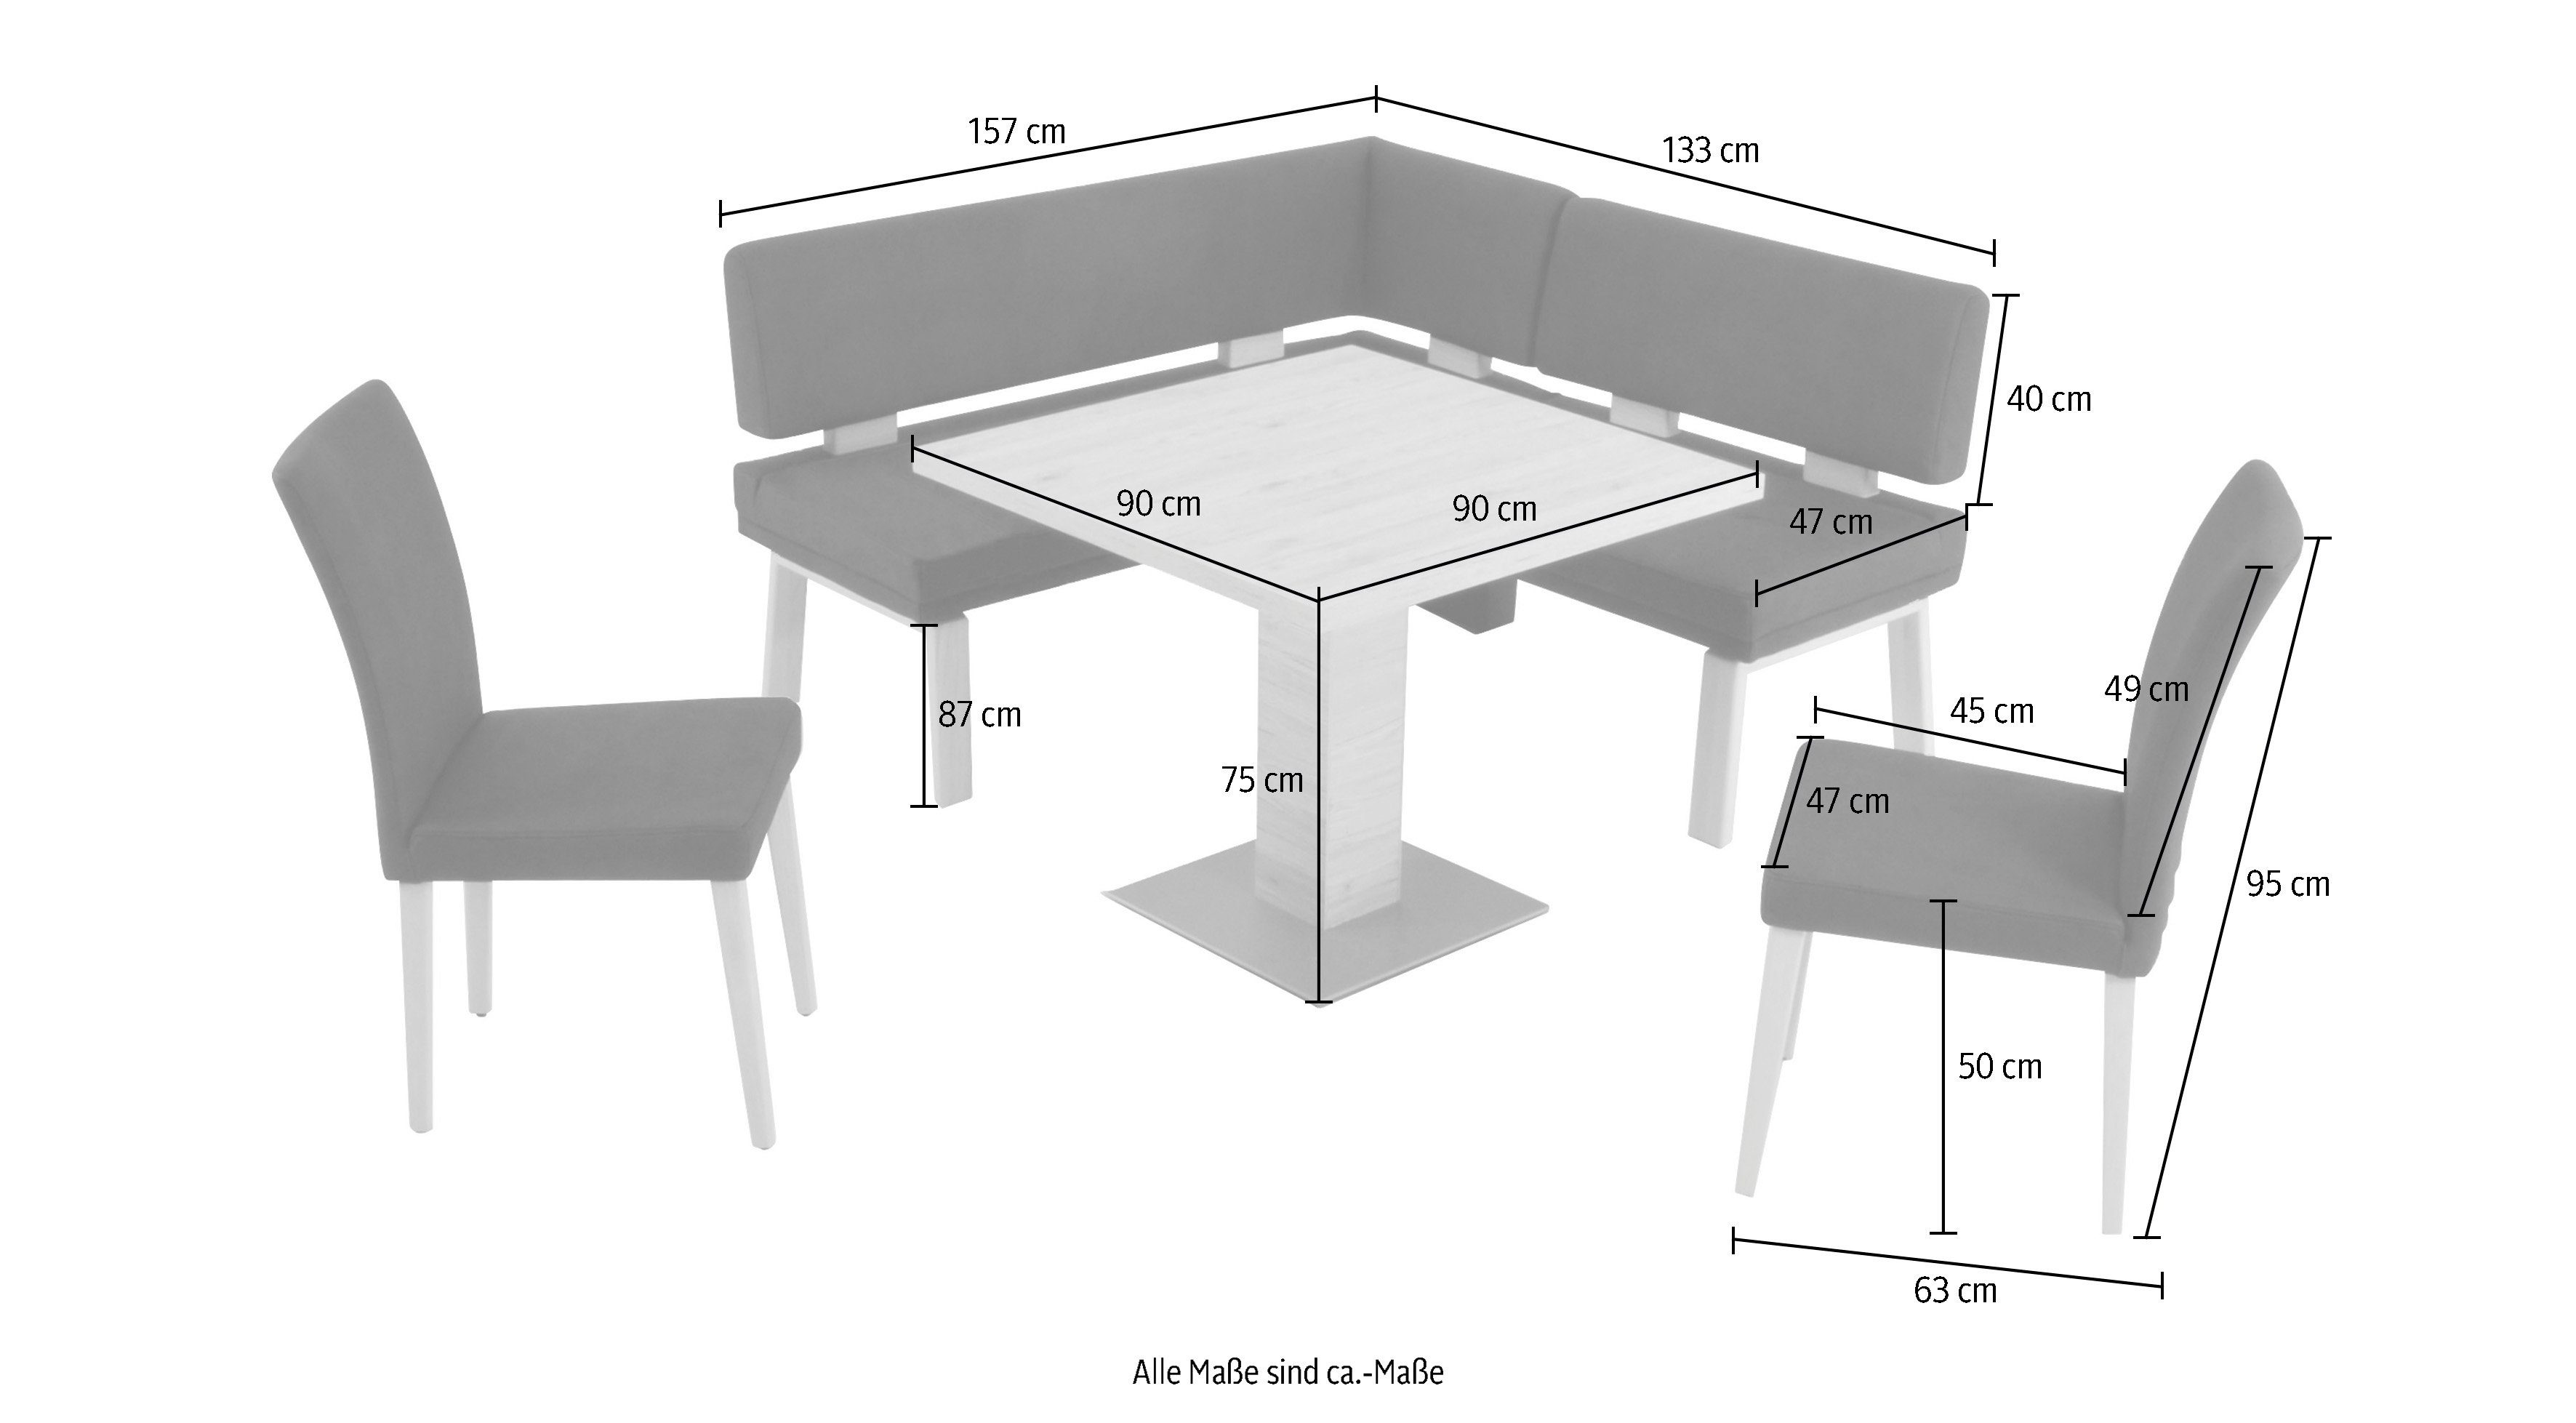 K+W Komfort & Eiche 90x90cm, zwei Wohnen Eckbankgruppe 157cm, ocean gleichschenklig Tisch und Santos 4-Fußholzstühle I